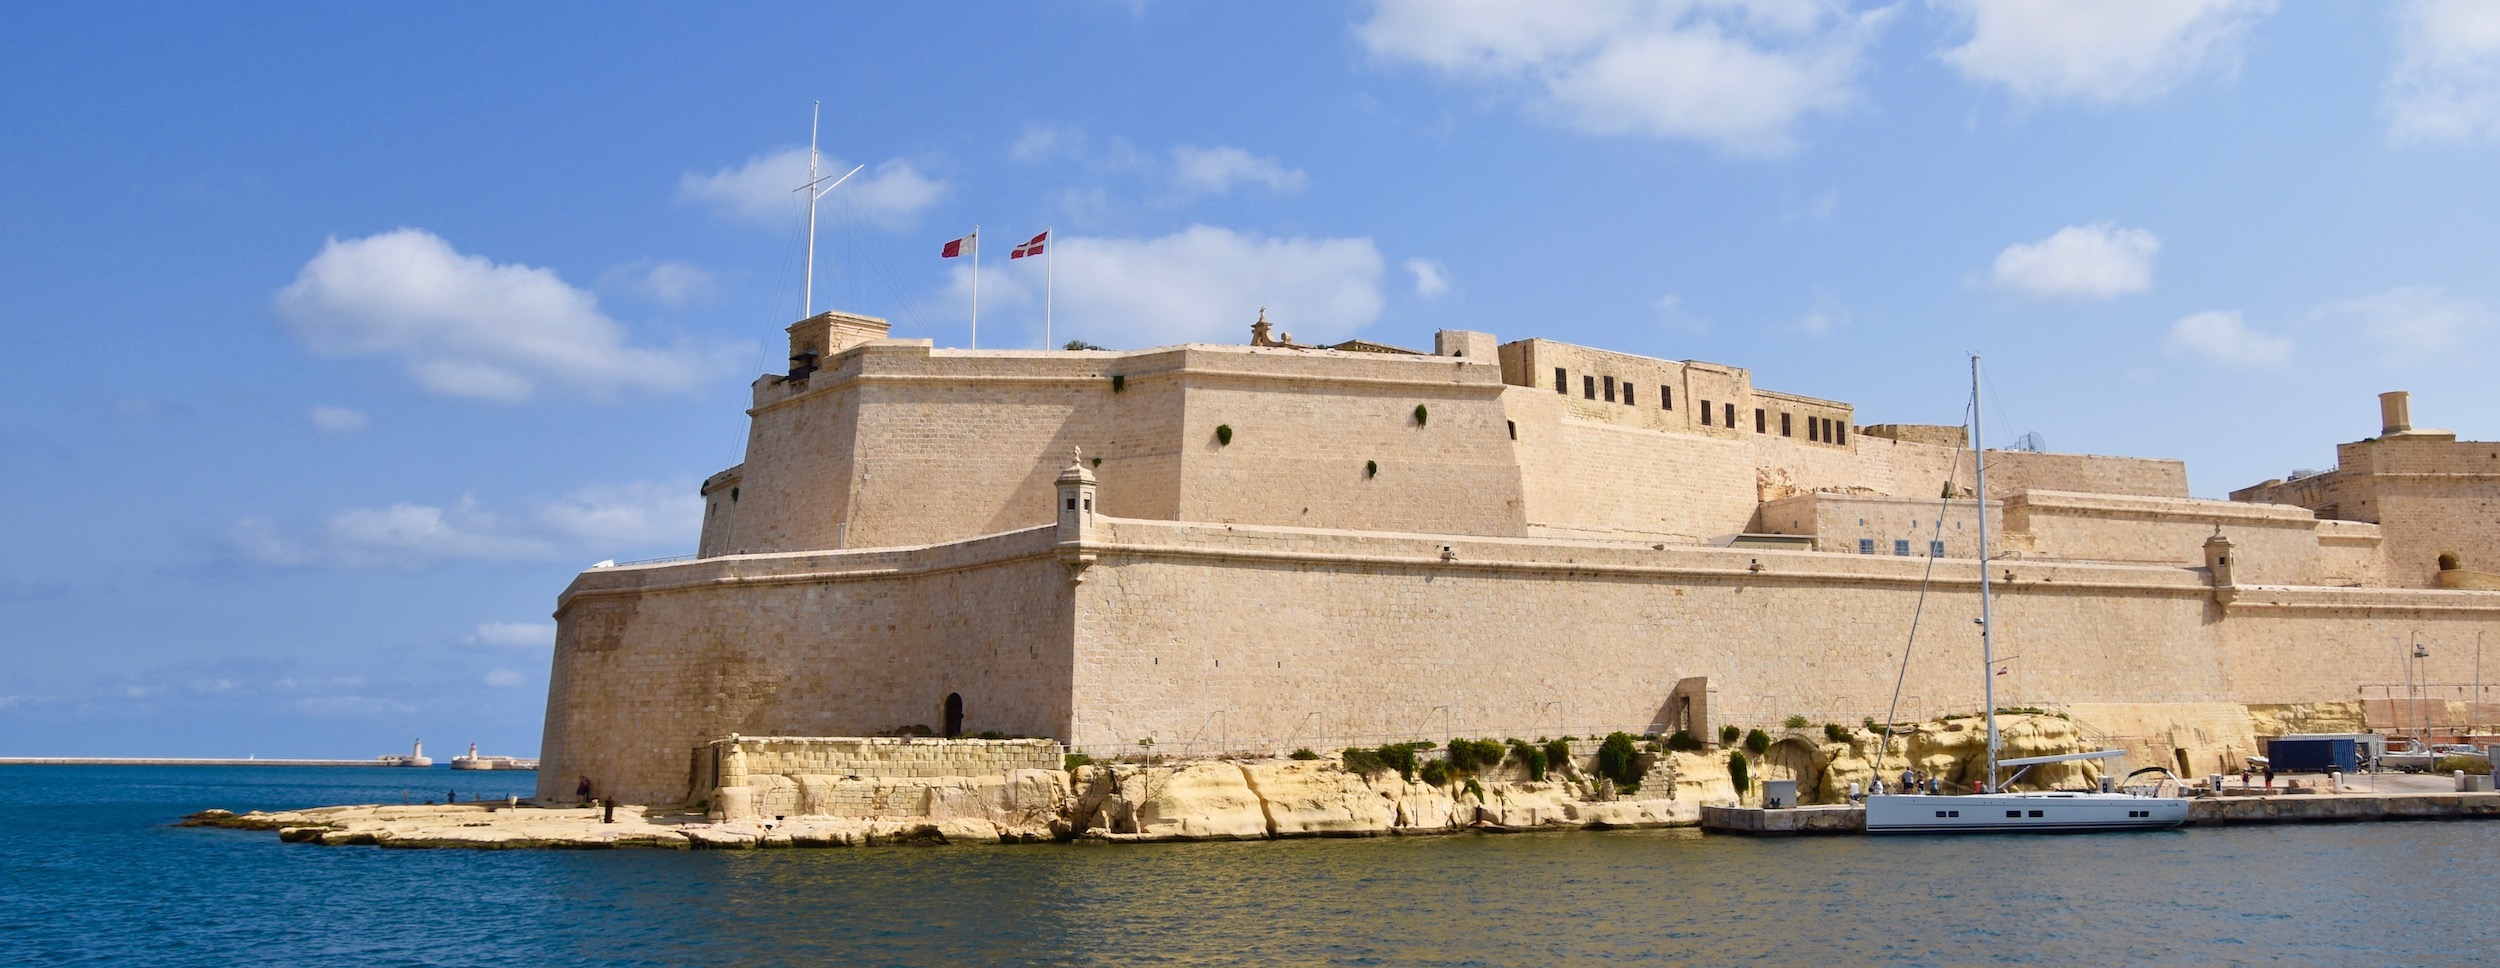 Fort St. Angelo, Grand Harbour, Malta